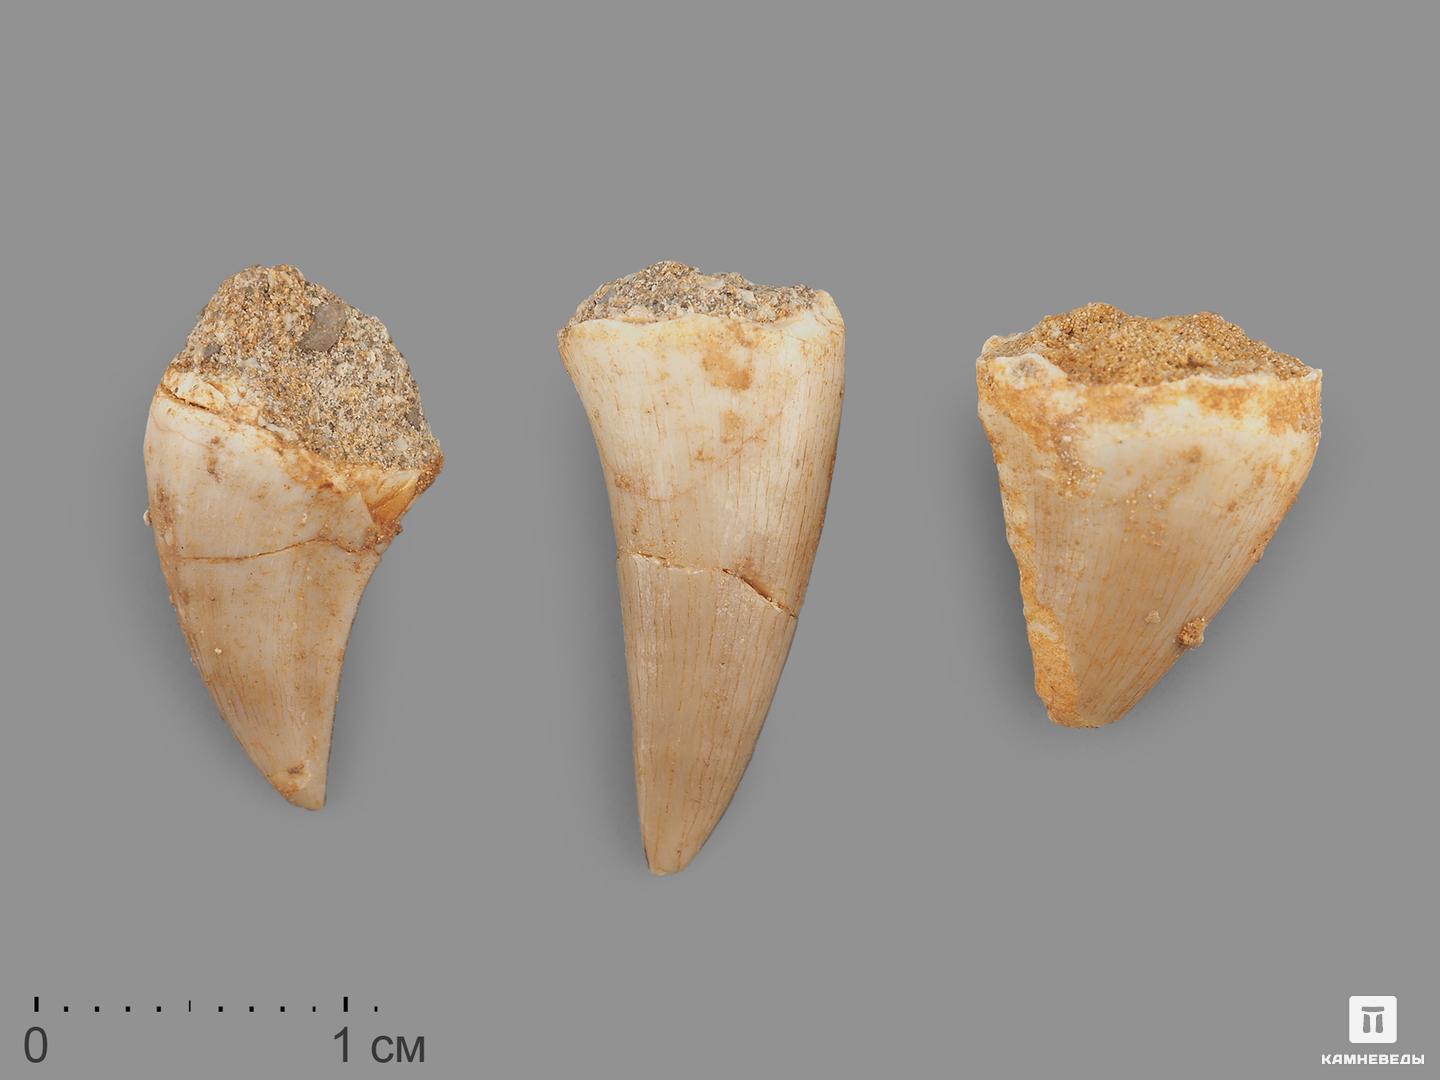 Зуб мозазавра окаменелый (Mosasaurus anceps), 1,5-2 см